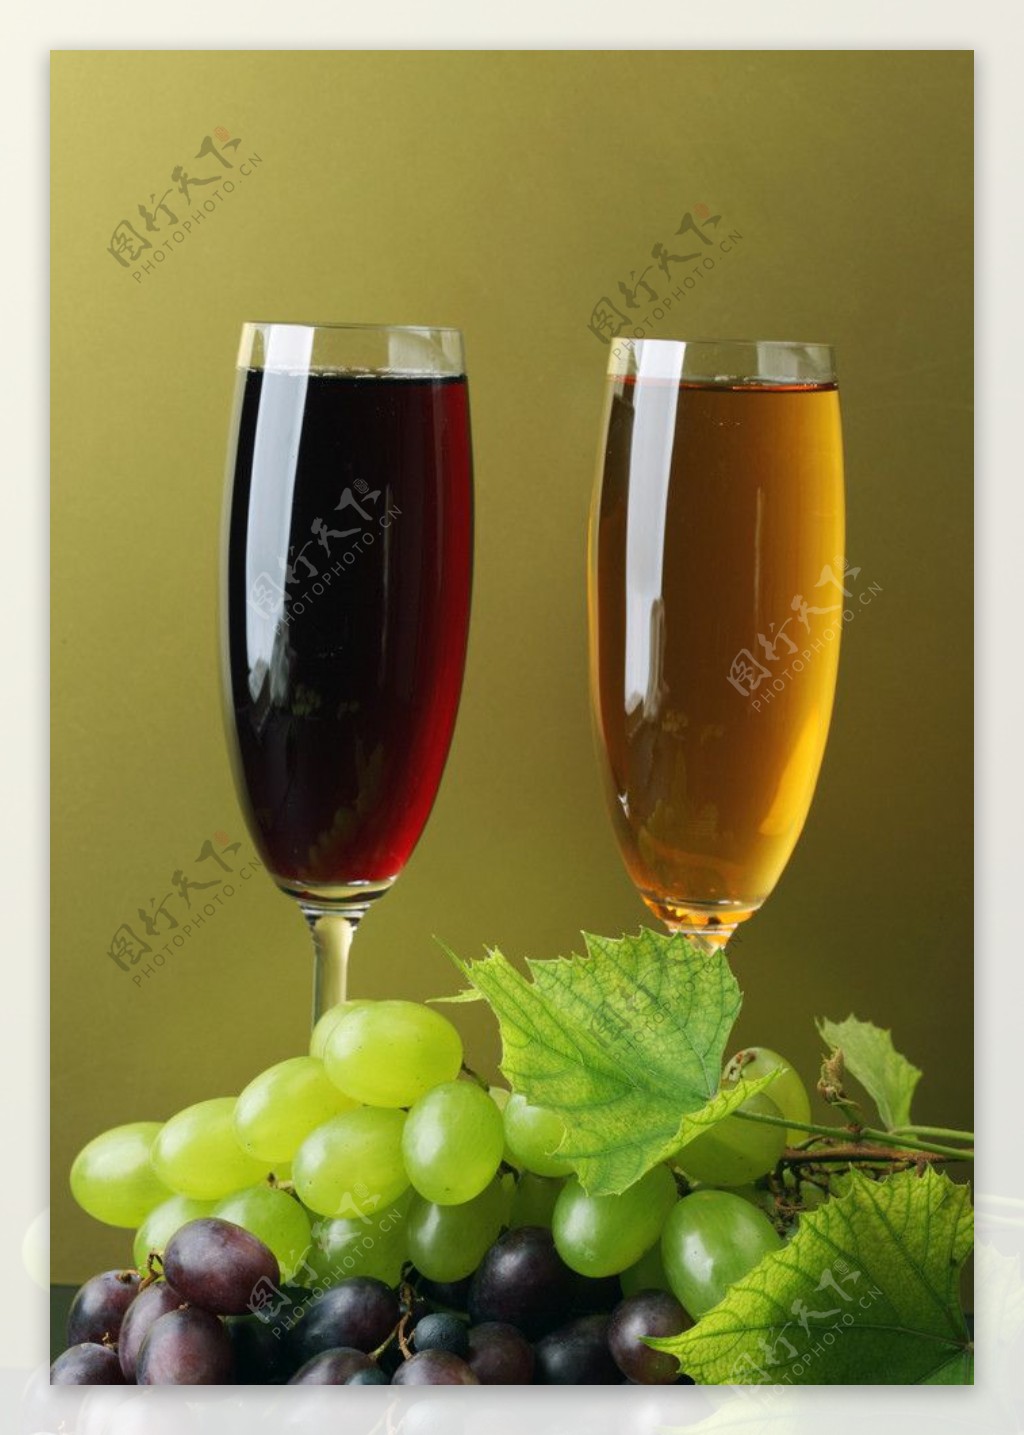 葡萄酒图片